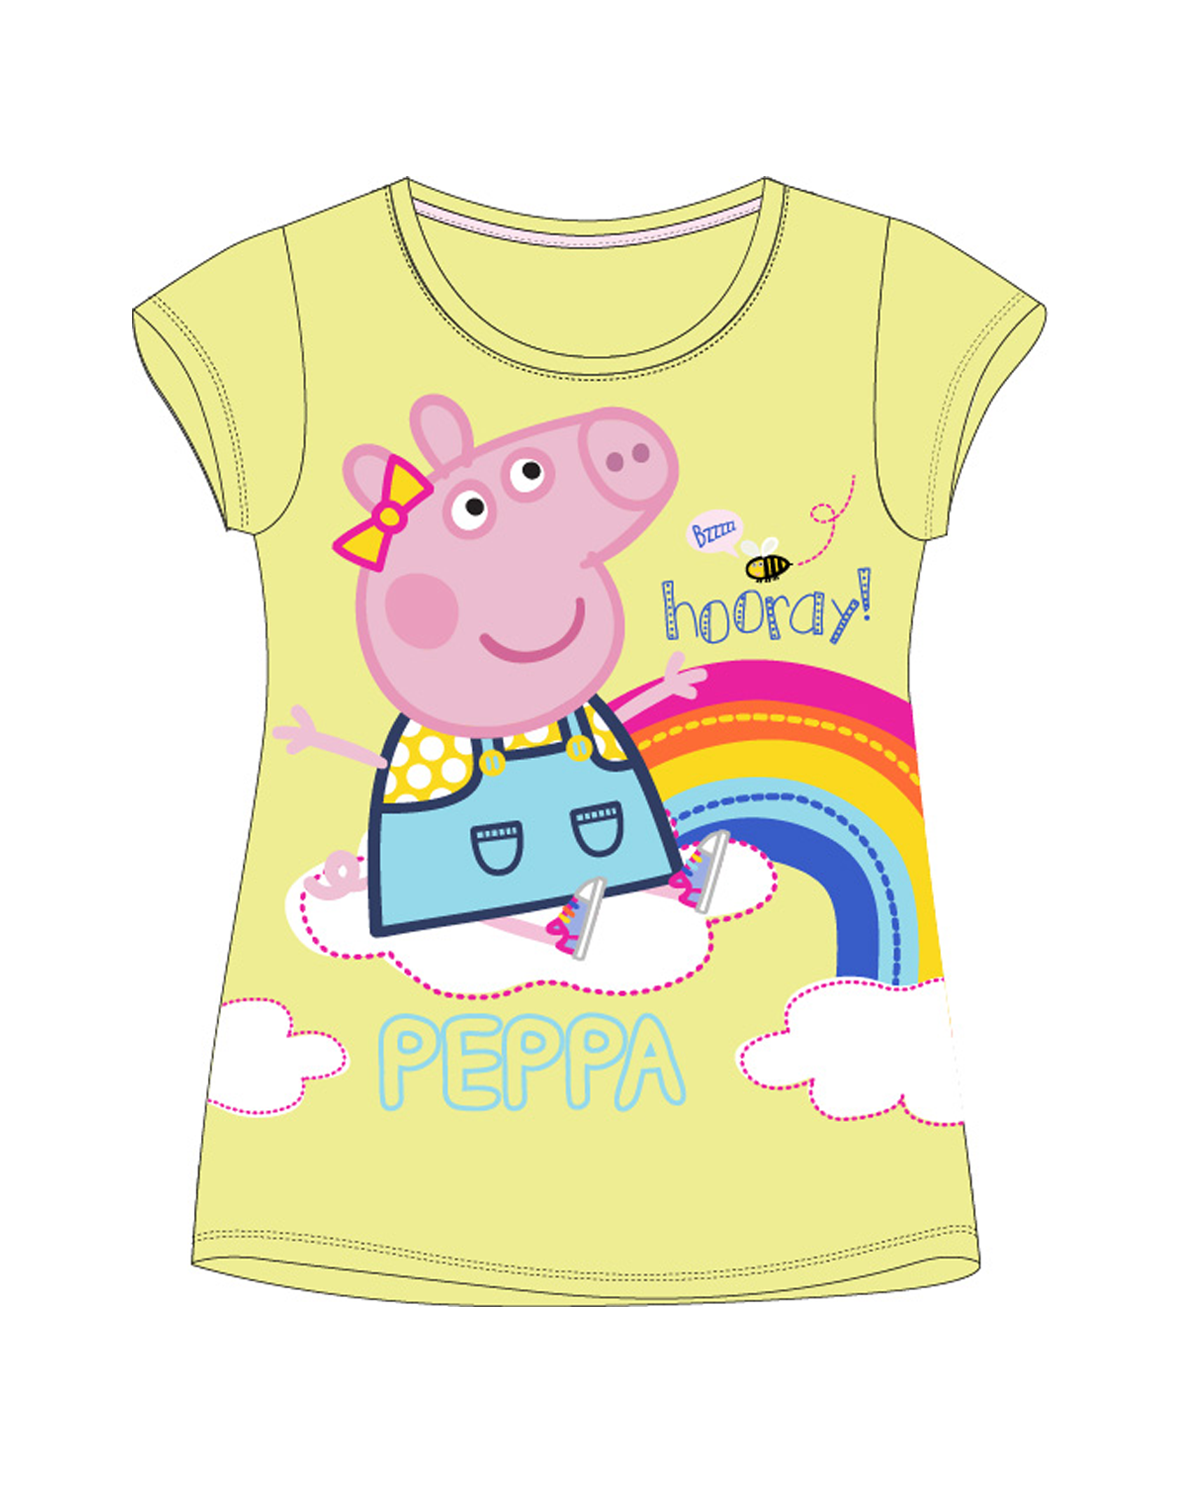 Prasátko Pepa - licence Dívčí tričko - Prasátko Peppa 5202874, žlutá Barva: Žlutá, Velikost: 116